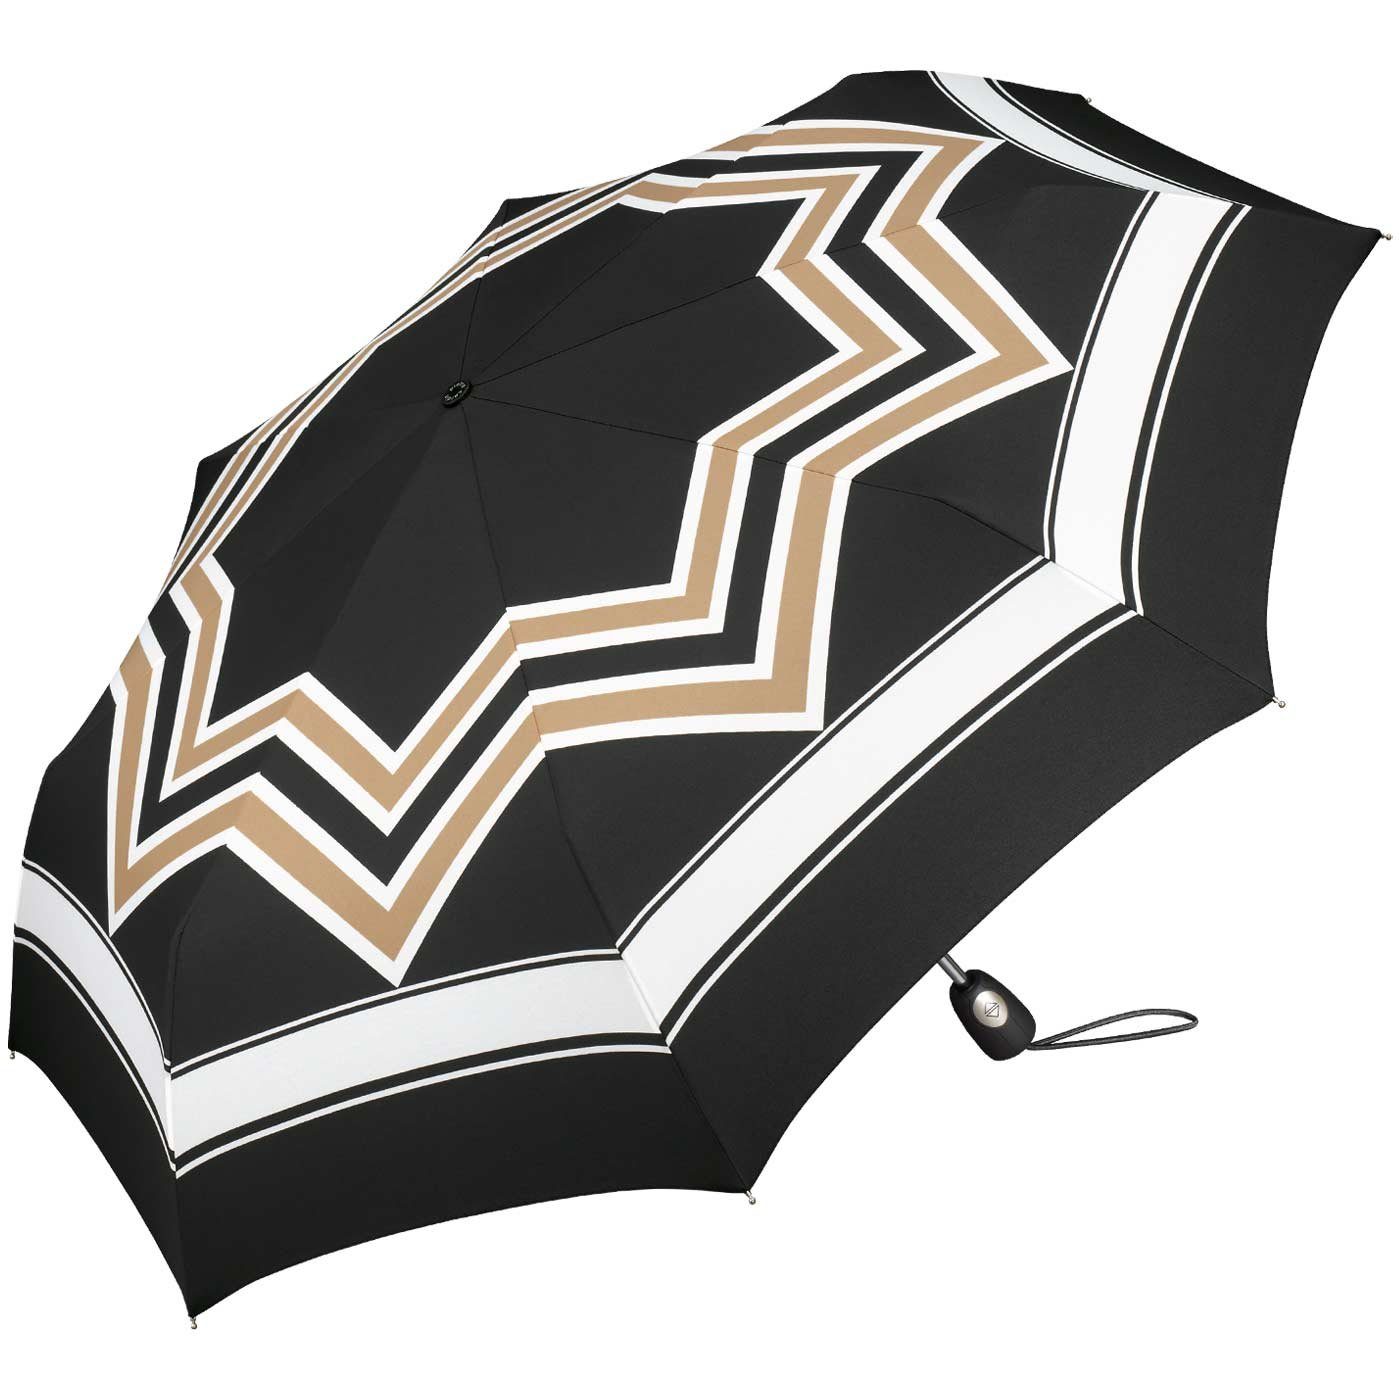 Pierre Cardin Langregenschirm schöner Damen-Regenschirm mit  Auf-Zu-Automatik, mit stilvollem, geometrischen Muster